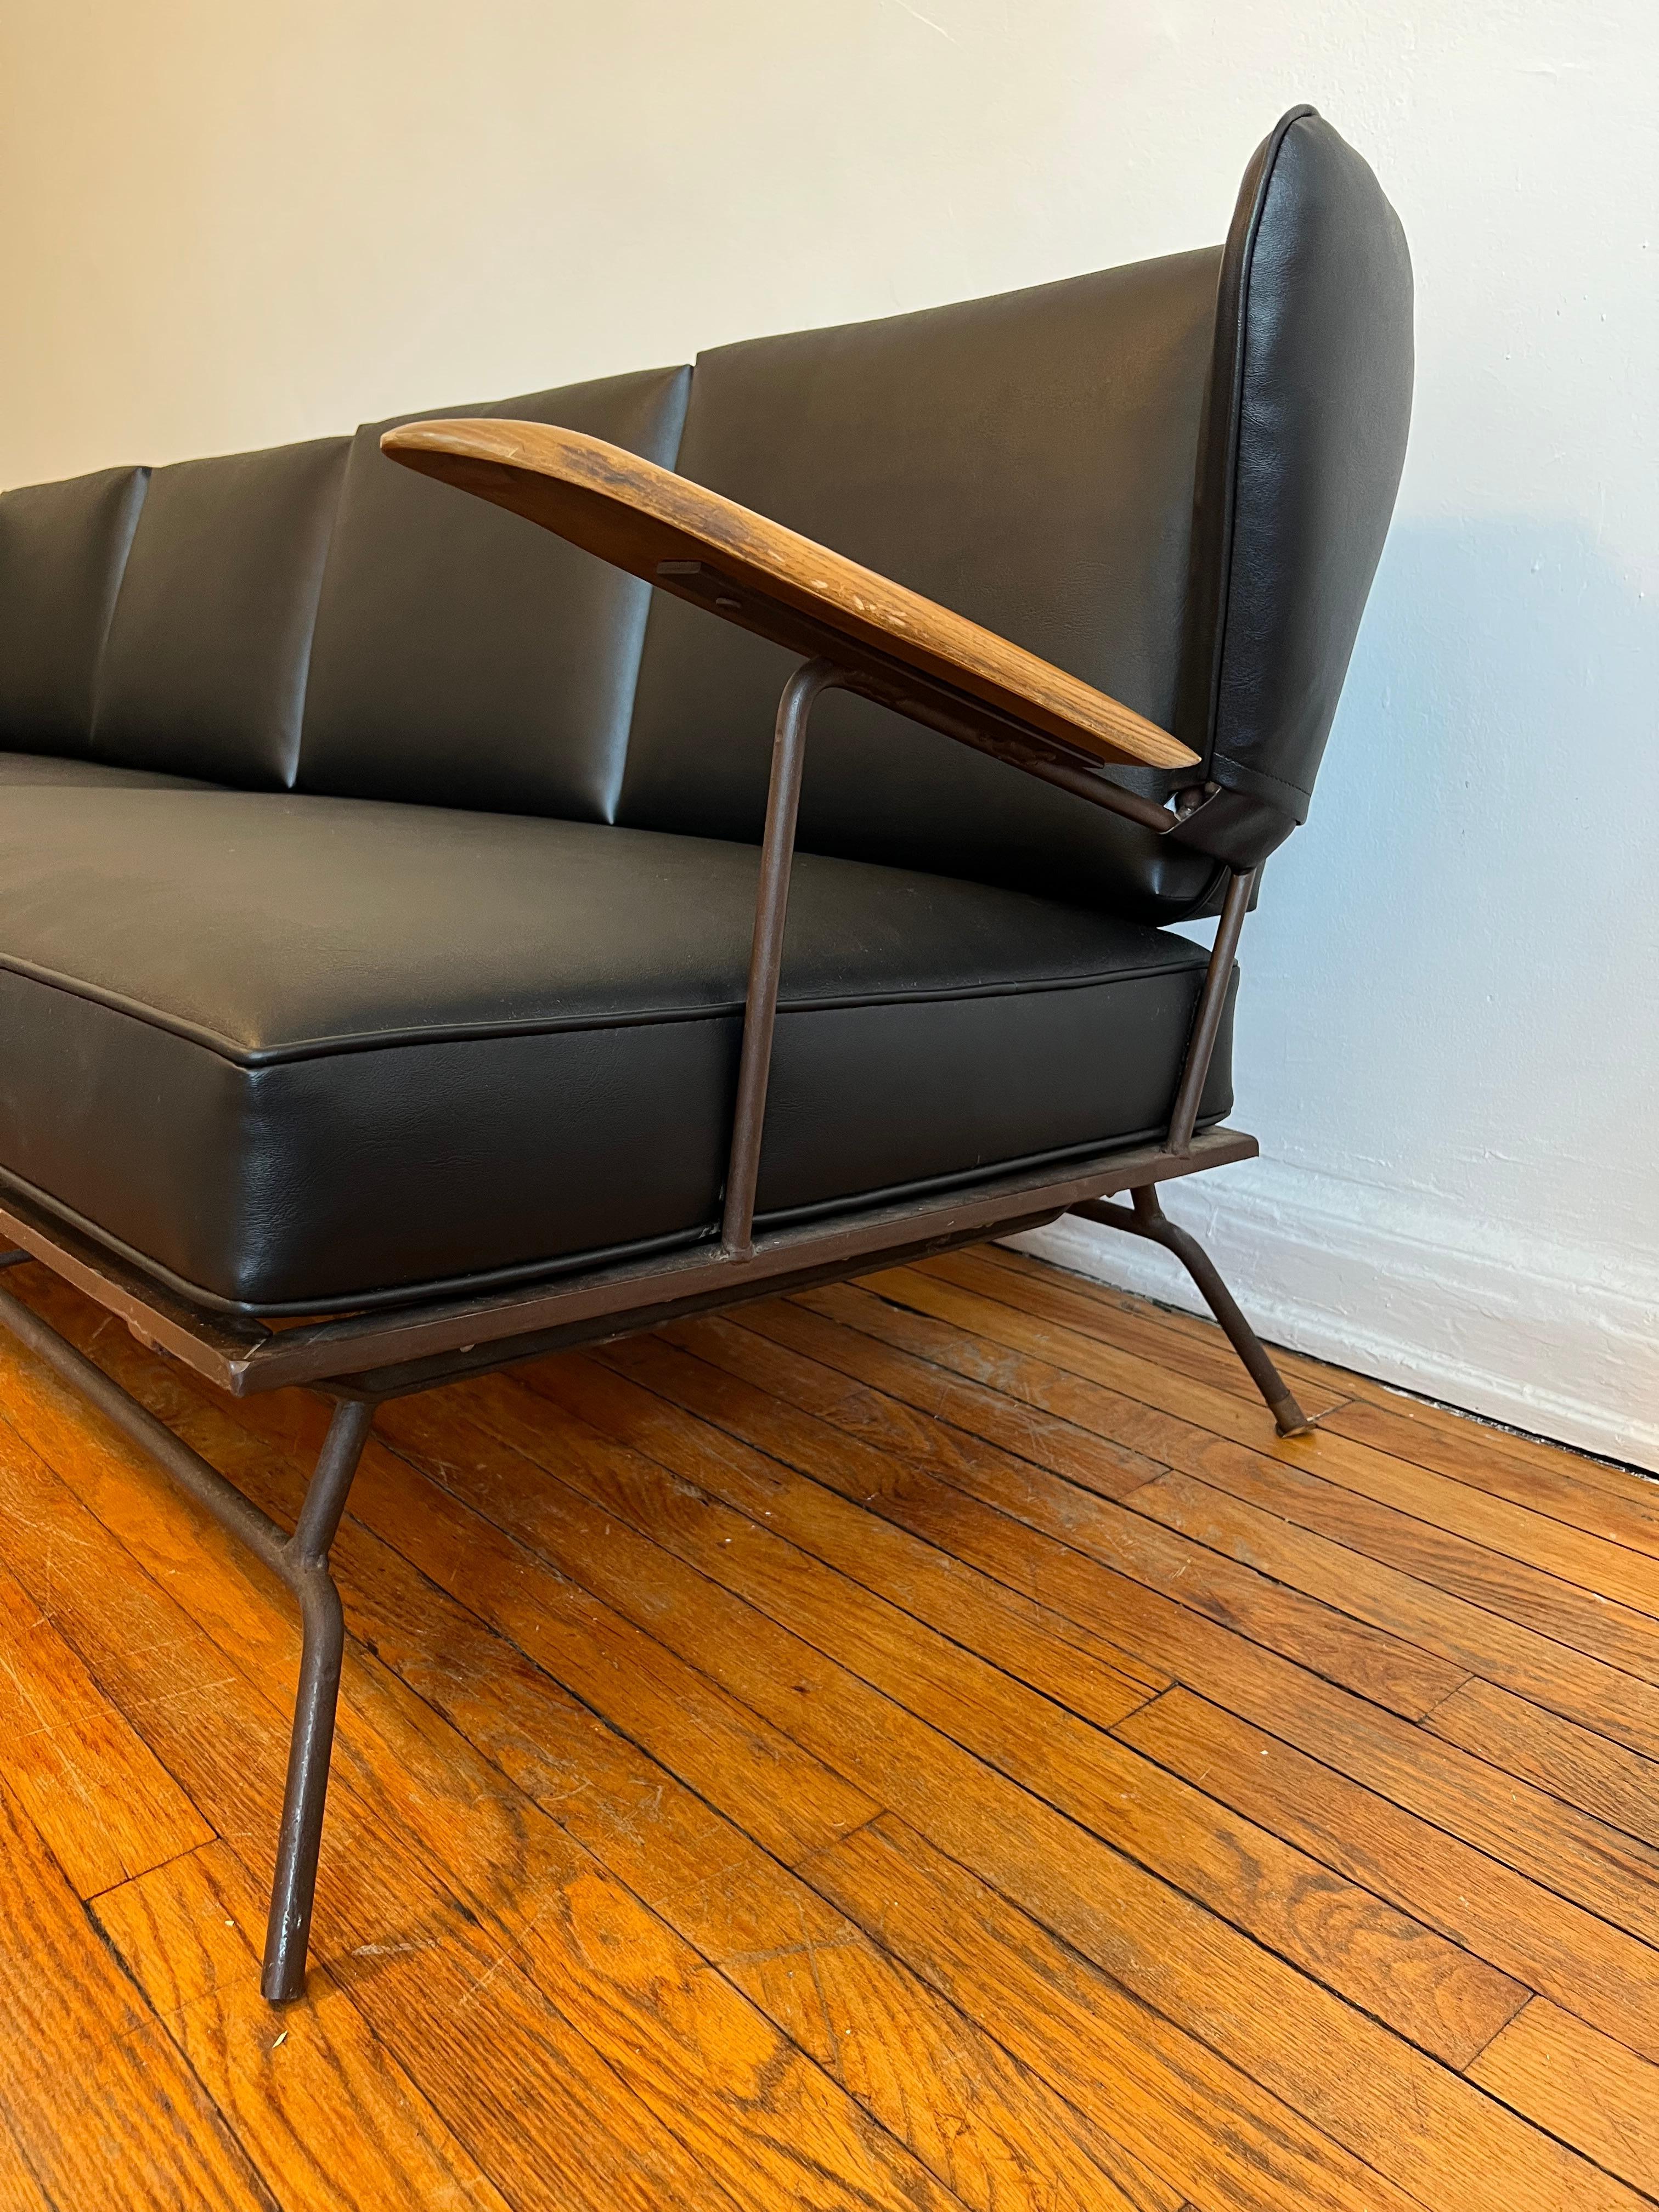 Sehr seltenes Sofa des Schmieds, Möbeldesigners und -herstellers Max Stout aus North Carolina.

Wingback-Sofa mit Armlehnen aus Holz, patiniertem Metall und schwarzem Naugahyde-Bezug. Unsere Galerie hat das Glück, das gleiche Sofa in Orange (auf der